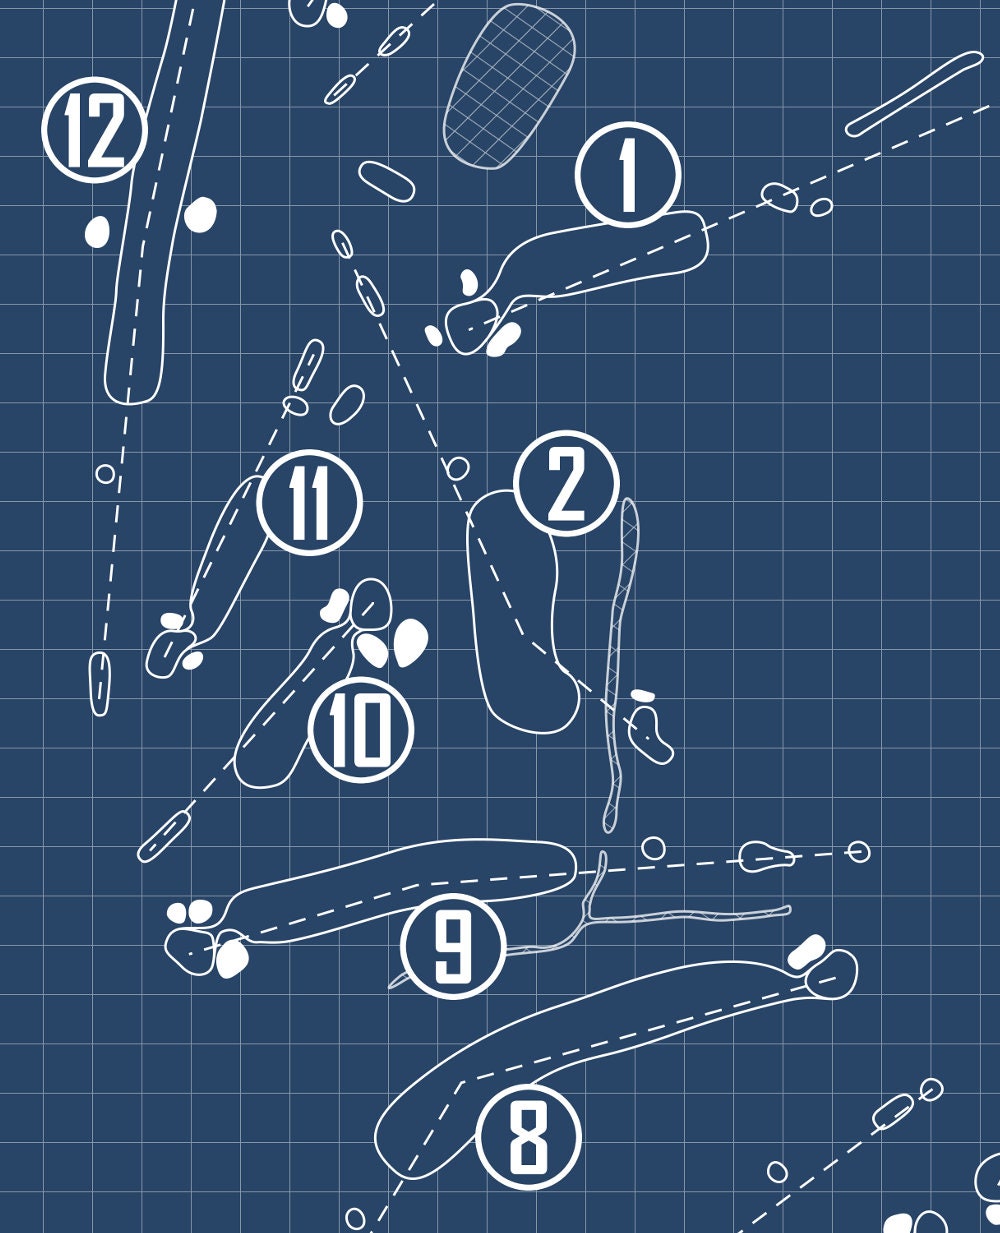 Riverside Golf Course Blueprint (Print)